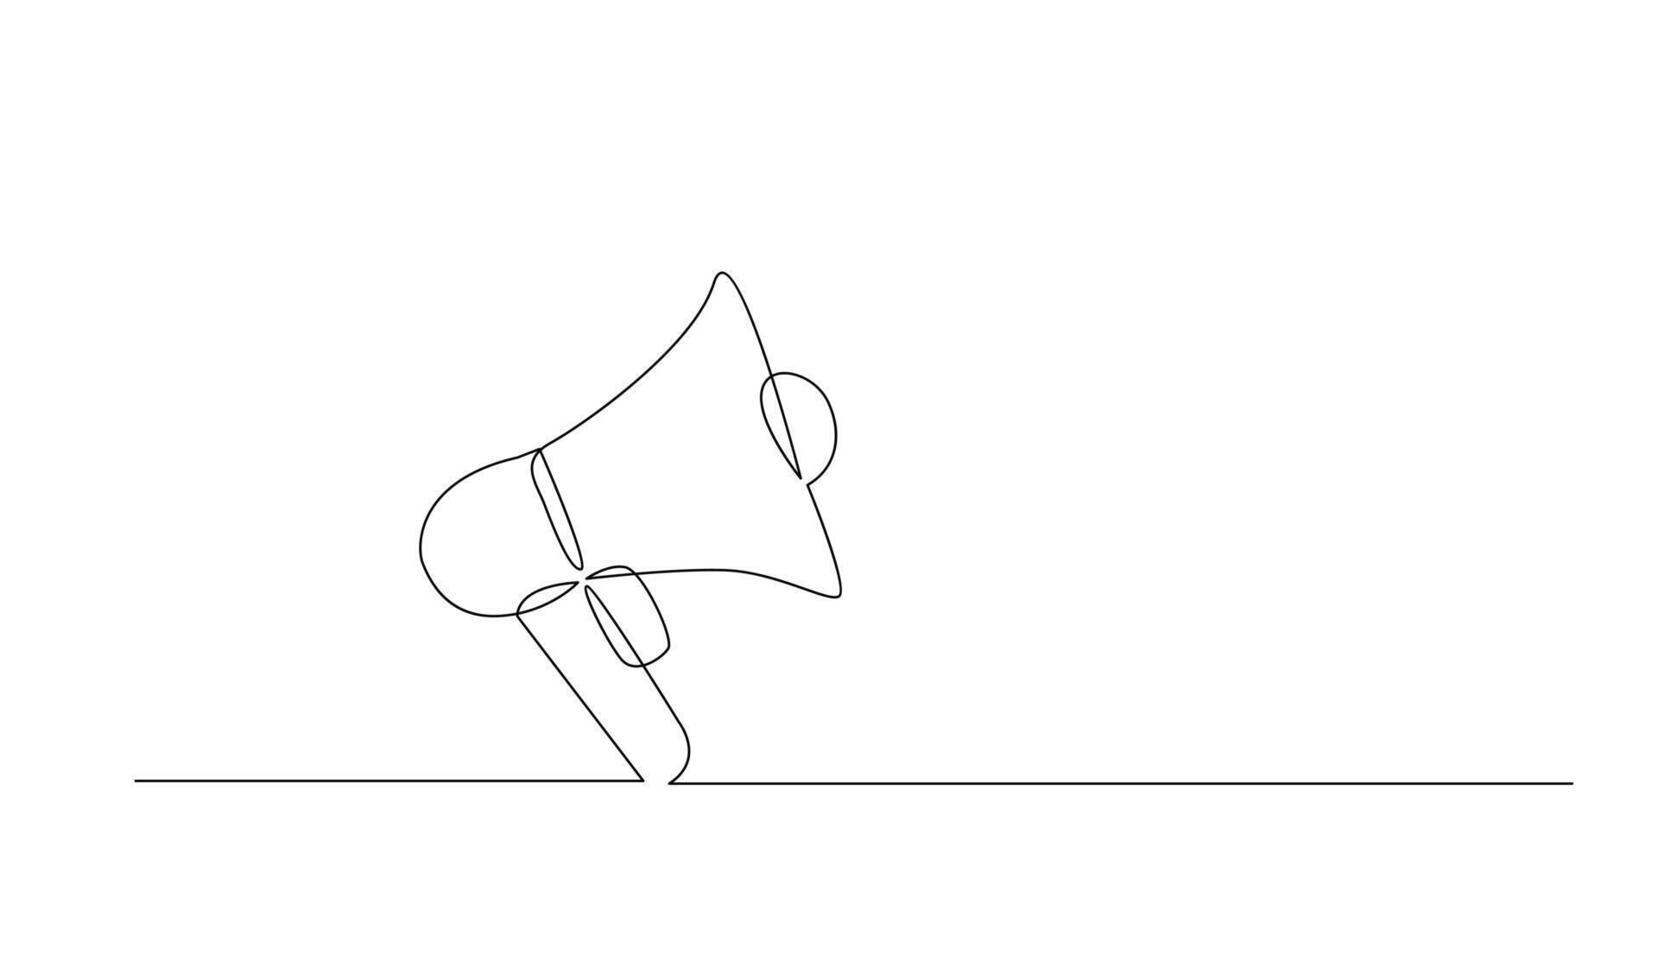 continuo singolo uno linea arte disegno di megafono altoparlante per notizia e promozione vettore illustrazione